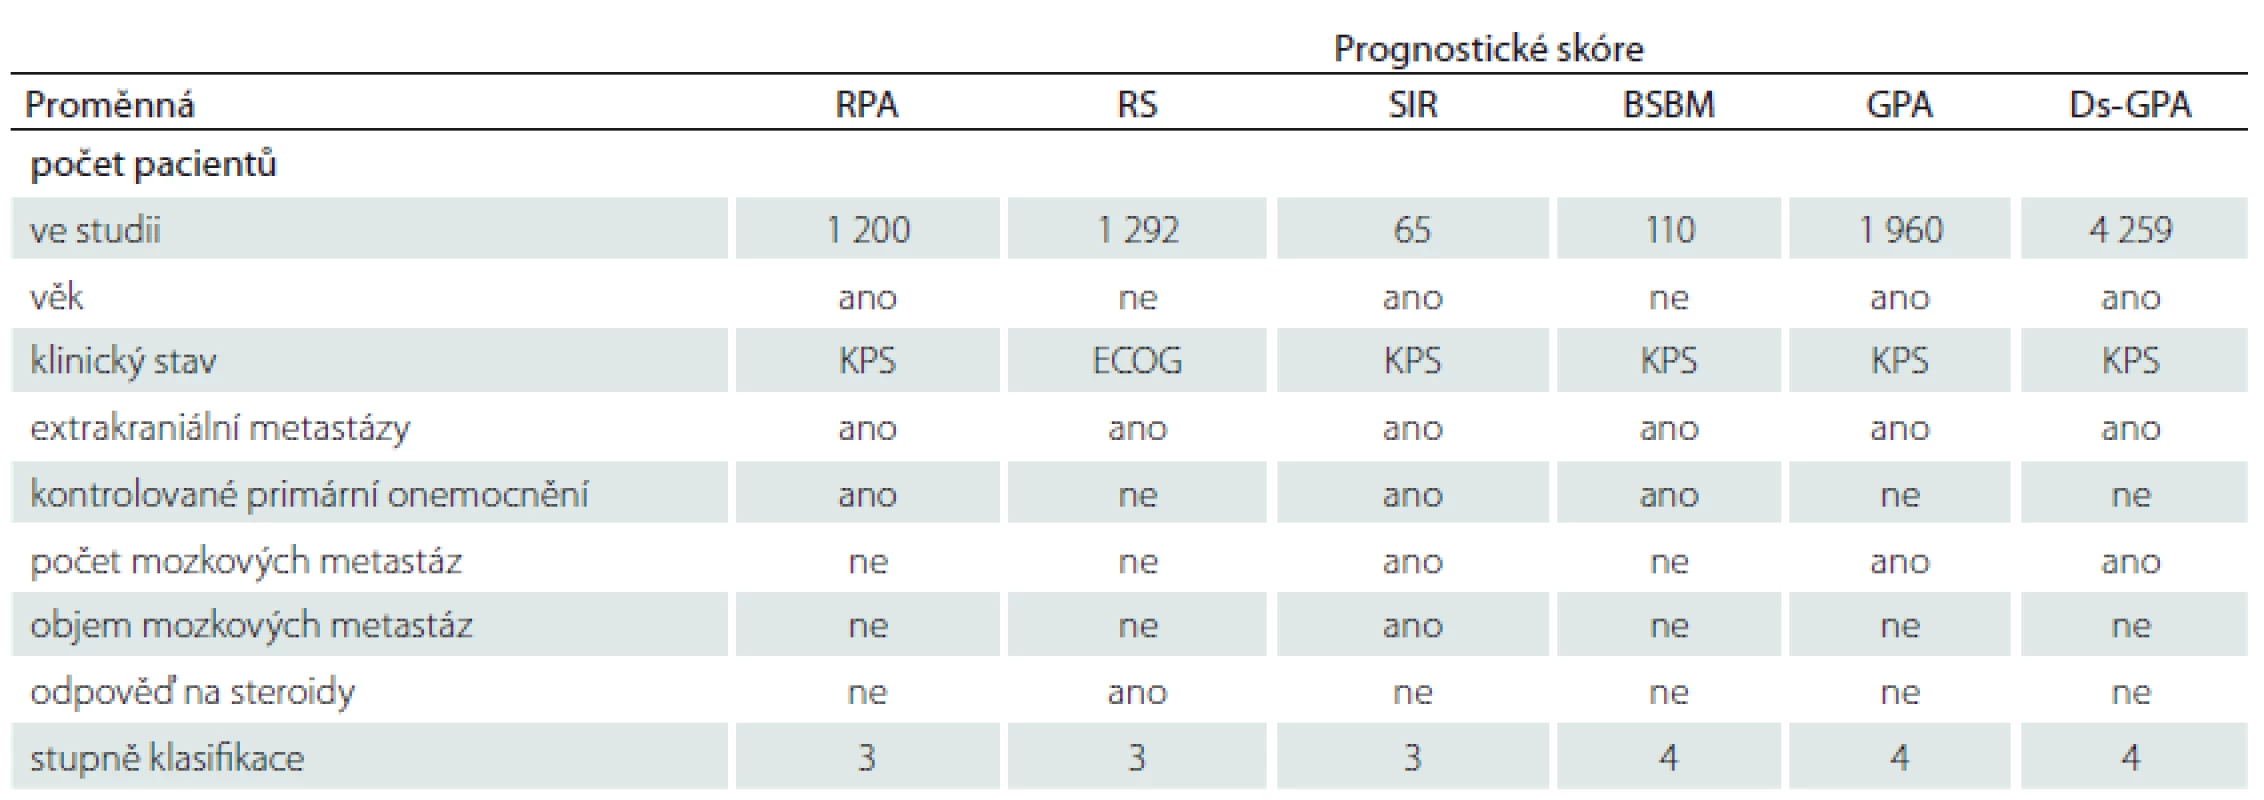 Prognostické skóre u mozkových metastáz. Upraveno podle [49].
RPA byla zavedena Gasparem et al v roce 1997. Pacienti byli rozděleni do tří skupin podle KPS, věku, kontrolovaného primárního onemocnění
a extrakraniálních projevů nemoci. Pacienti s KPS ≥ 70, mladší 65 let, s kontrolovaným primárním onemocněním a bez dalších extrakraniálních
metastáz byli ve skupině I a měli nejlepší prognózu (medián přežití 7,1 měsíce). Ve III. skupině byli pacienti s KPS < 70 (přežití
2,3 měsíce) a zbylí pacienti ve II. skupině (medián přežití 4,2 měsíce).
RS bylo zavedeno na základě zkušeností jednoho centra Lagerwaardem et al v roce 1999. I když statisticky signifi kantní výsledky byly shledány
u věku, KPS, kontrolovaného primárního onemocnění a extrakraniálních projevů nemoci, odpovědi na steroidy, hladiny laktátdehydrogenázy,
pohlaví a lokalizace primárního nádoru, do skórovacího skóre byl použit pouze klinický stav pacienta podle ECOG, extrakraniální
projev nemoci a odpověď na steroidy. Posledně jmenovaná položka byla pak limitem širšího použití této škály.
SIR byl zaveden v roce 2000 Weltmanem et al. Pracuje se šesti proměnnými (věk, KPS, kontrolované primární onemocnění, přítomnost extrakraniálních
metastáz, počet a objem mozkových metastáz). Podrobné zpracování potřebné k posouzení systémového onemocnění
omezilo široké rozšíření tohoto prognostického indexu.
Základní skóre pro mozkové metastázy BSBM bylo zavedeno v roce 2004 Lorenzonim et al. Používá stejné parametry jako RPA kromě věku.
Je jednoduché s podobnou predikcí prognózy.
GPA škála byla zavedena v roce 2007 Sperdutem et al. Kromě věku, KPS a přítomnosti extrakraniálních metastáz zahrnuje do výpočtu i počet
metastáz. Jedná se o jednoduchou škálu, která je často používána. Vzhledem k tomu, že prognóza je závislá také na typu primárního
nádoru, byla škála později rozšířena o tuto položku jako Ds-GPA.
Skóre je možno spočítat na webových stránkách [69], kde je také uvedeno přibližné přežití pacienta.